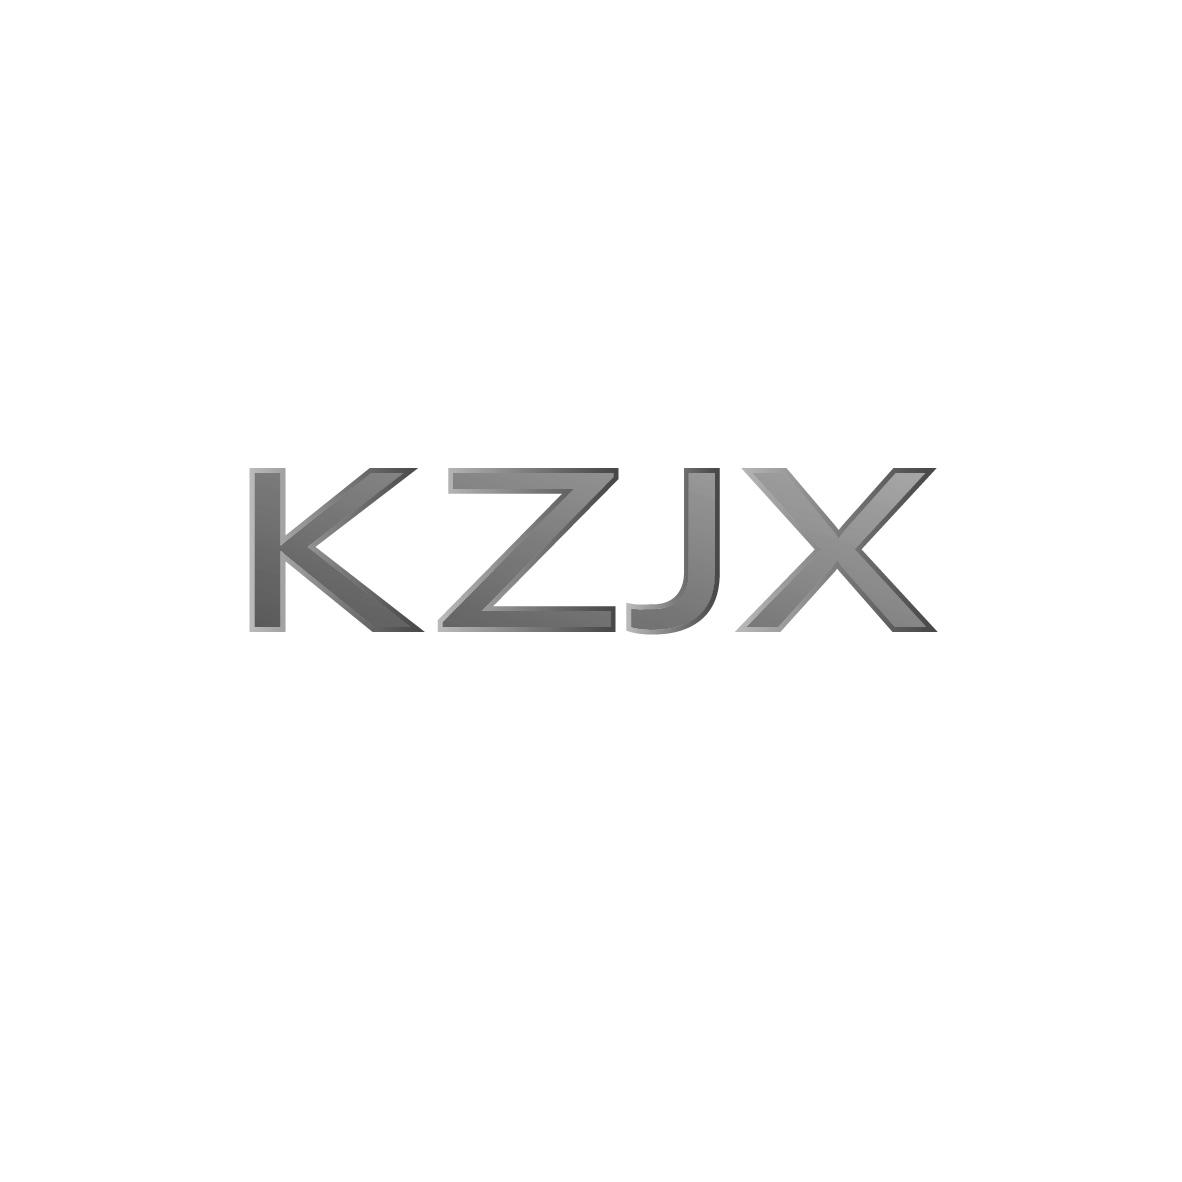 10类-医疗器械KZJX商标转让